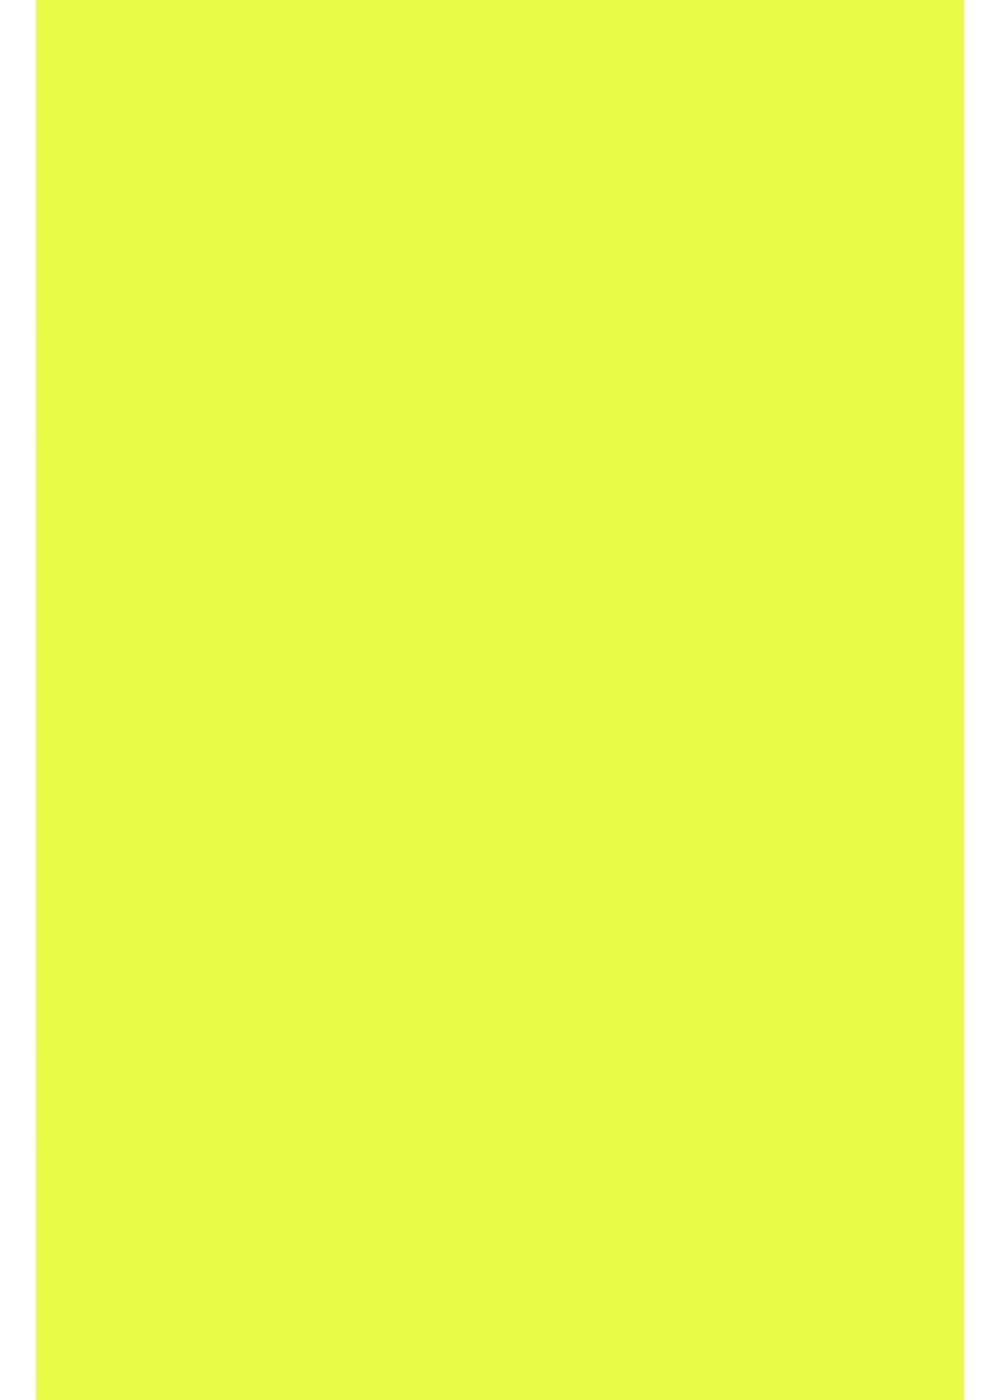 Textilfolie, Transferfolie, Neon Gelb Reflektierende cm Transparentpapier mehrfarbig, Hilltop 30x20